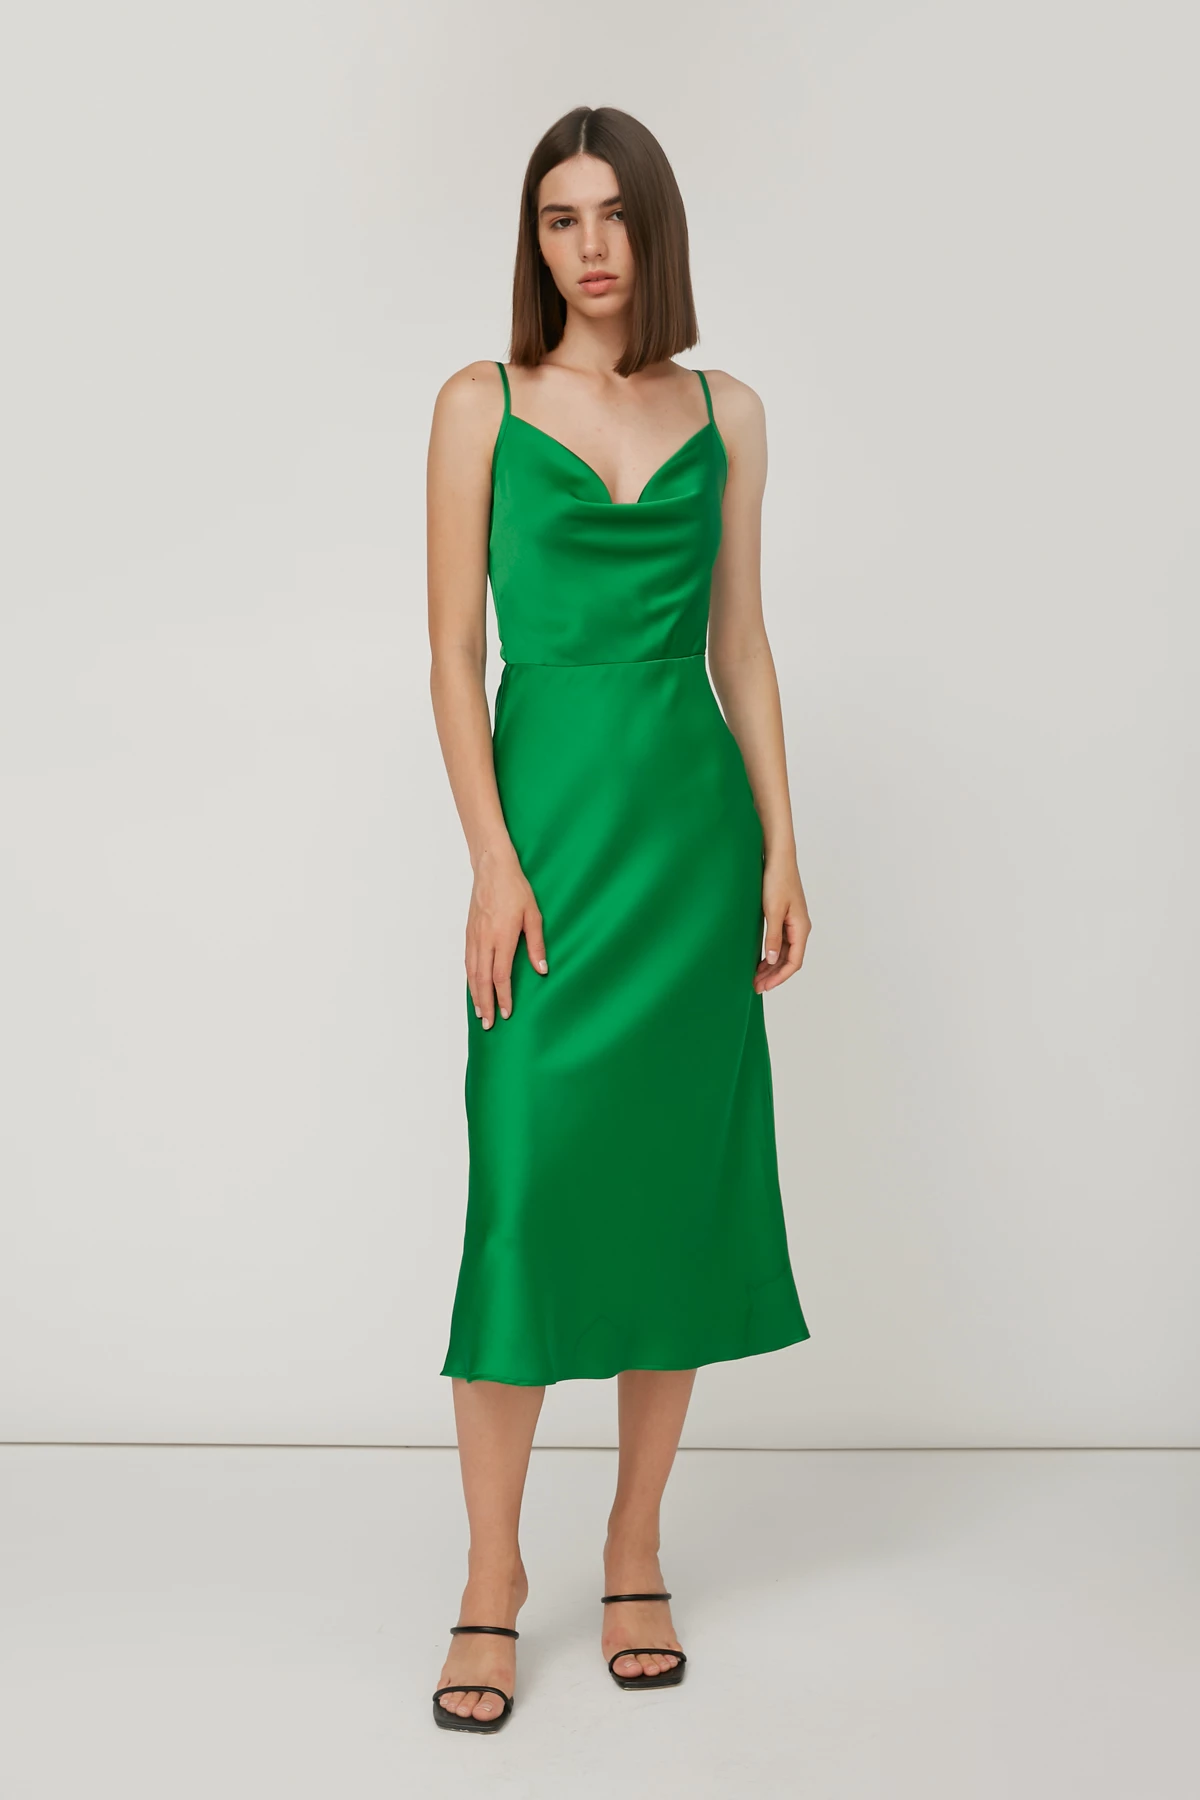 Ярко-зеленое платье-комбинация с провисанием в области декольте, фото 1